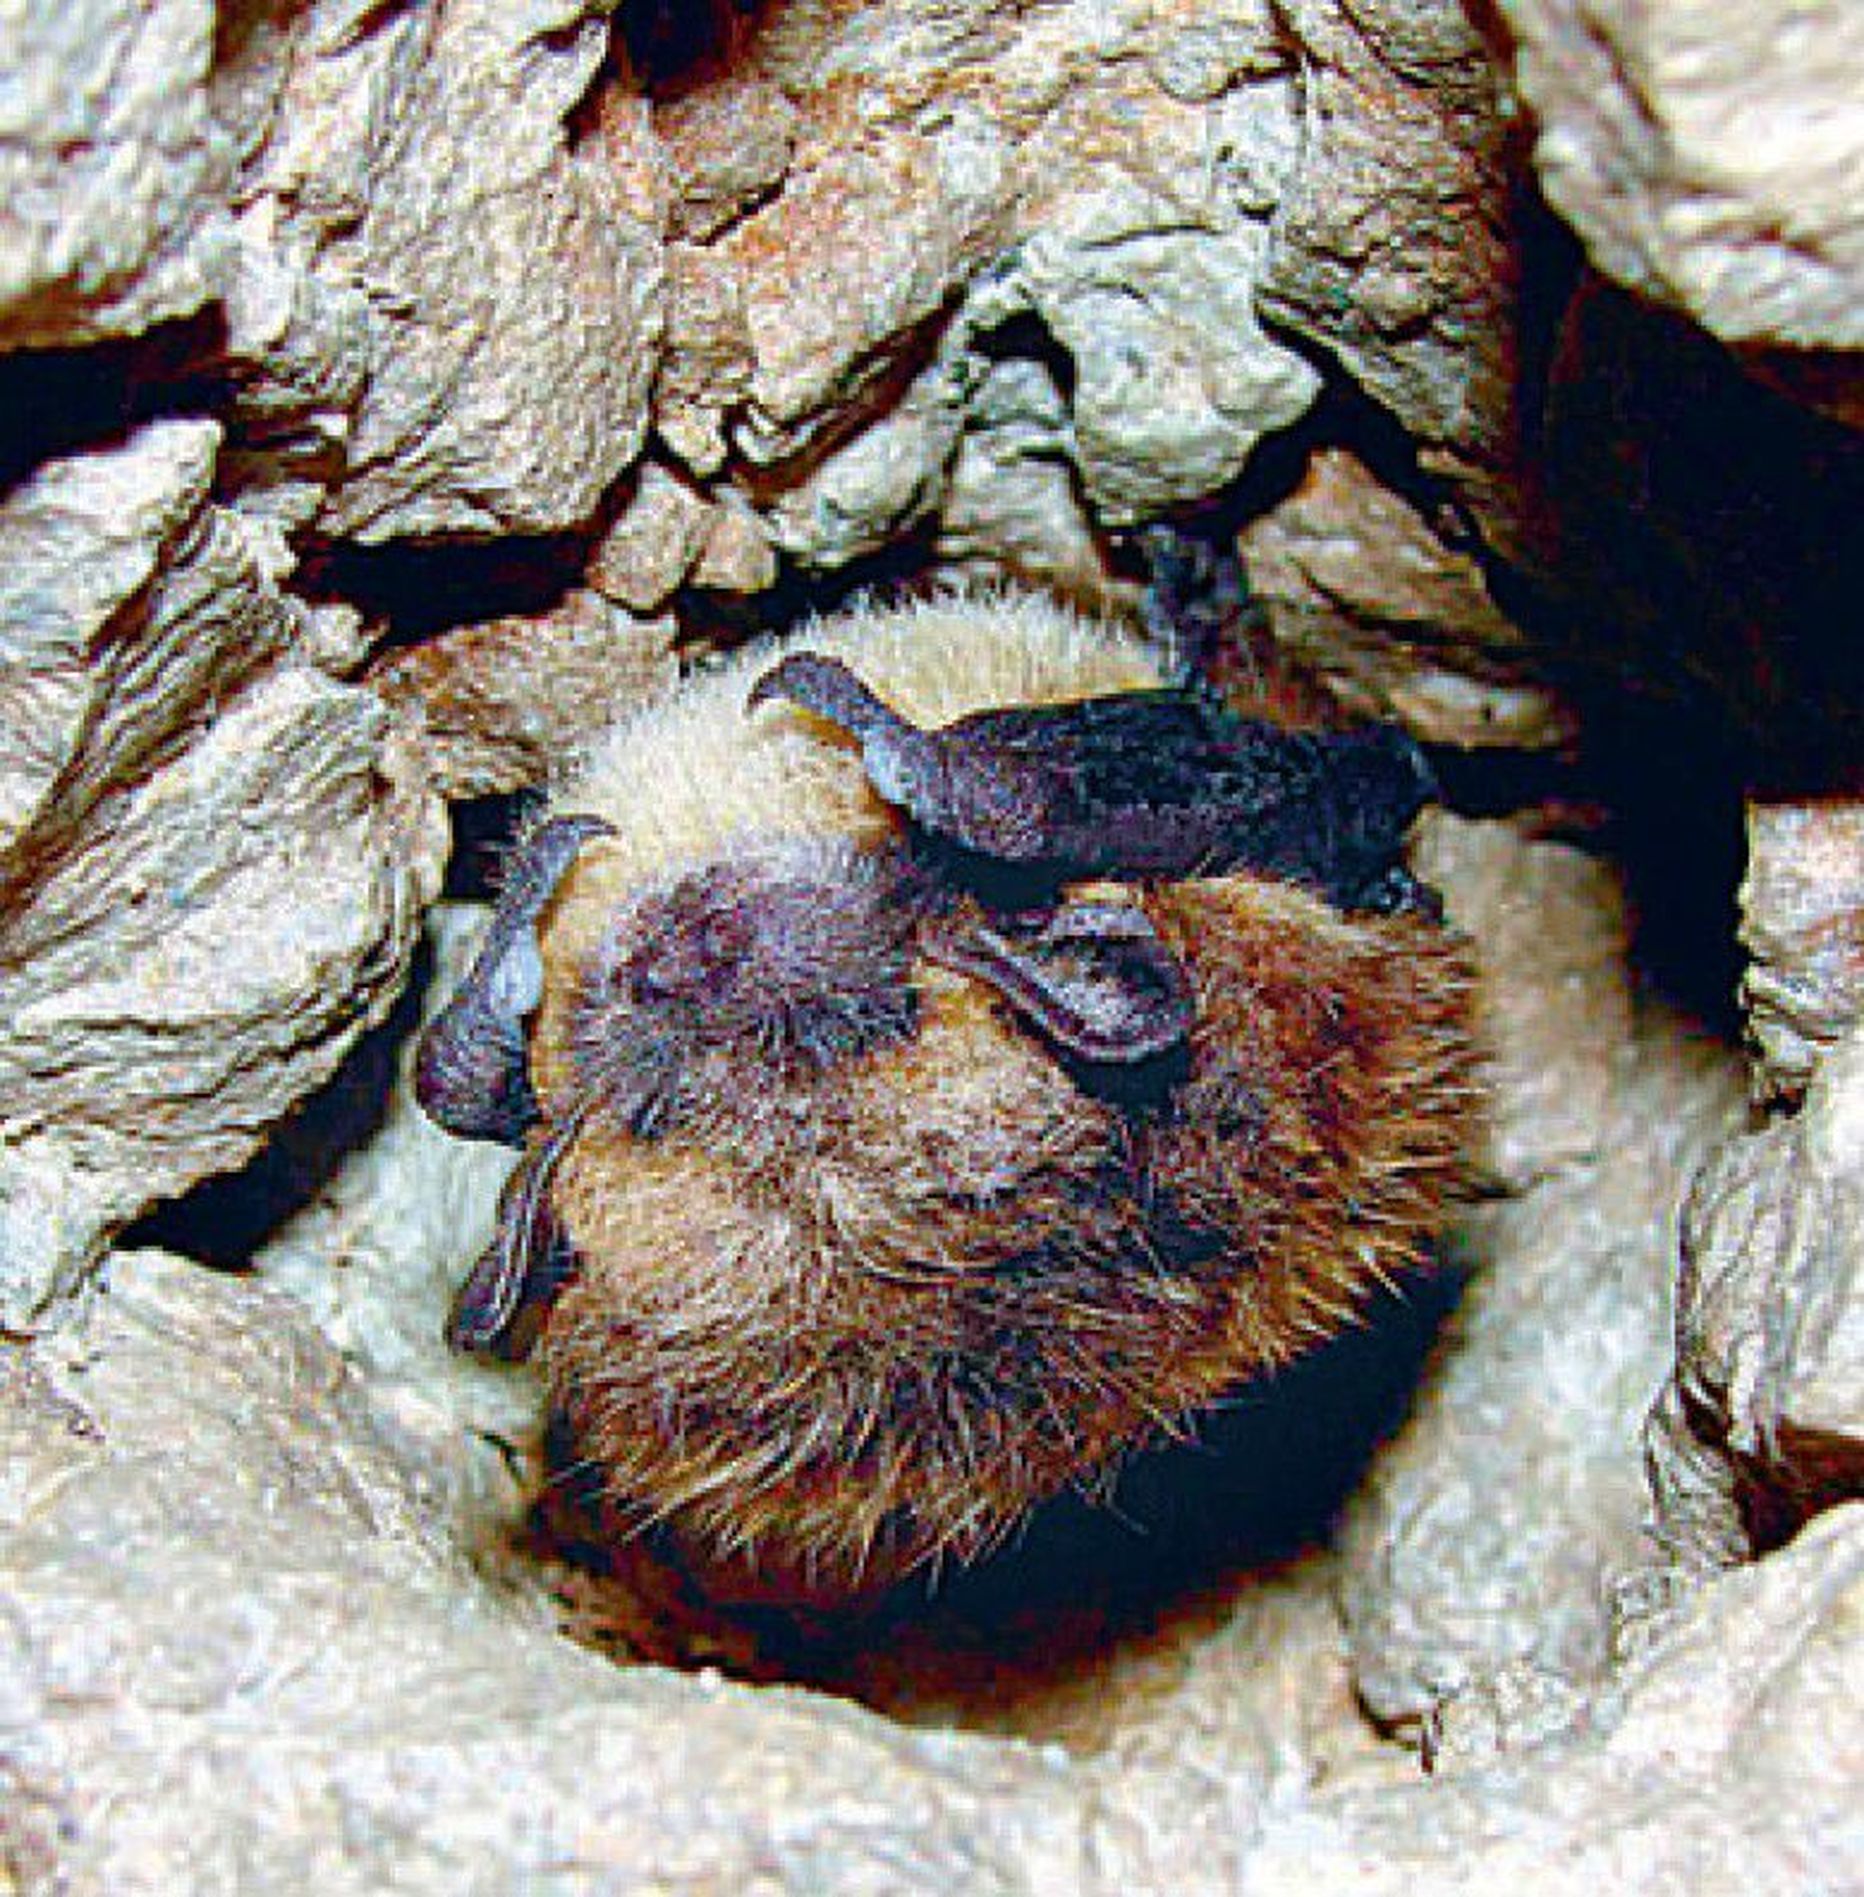 Põhja-nahkhiir talvitumas koopa laes. Karvad on kattunud jäätunud veepiiskadega, sest talvituskoht on koopaava lähedal.